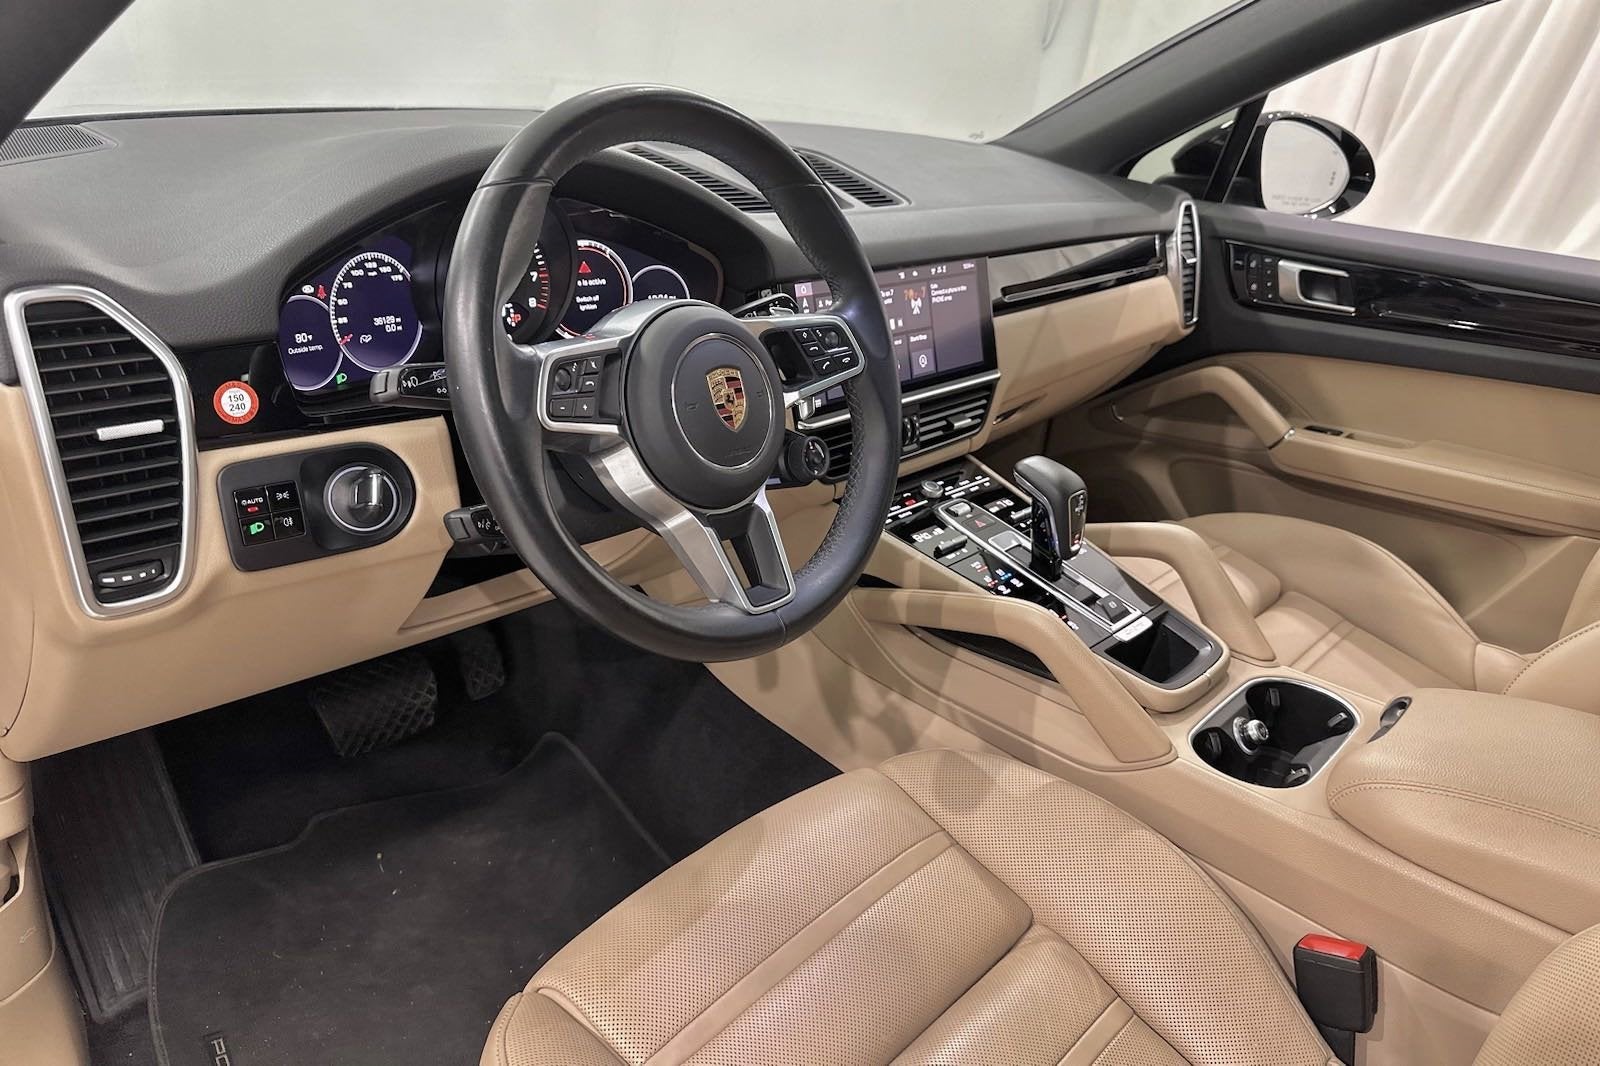 2021 Porsche Cayenne Coupe AWD